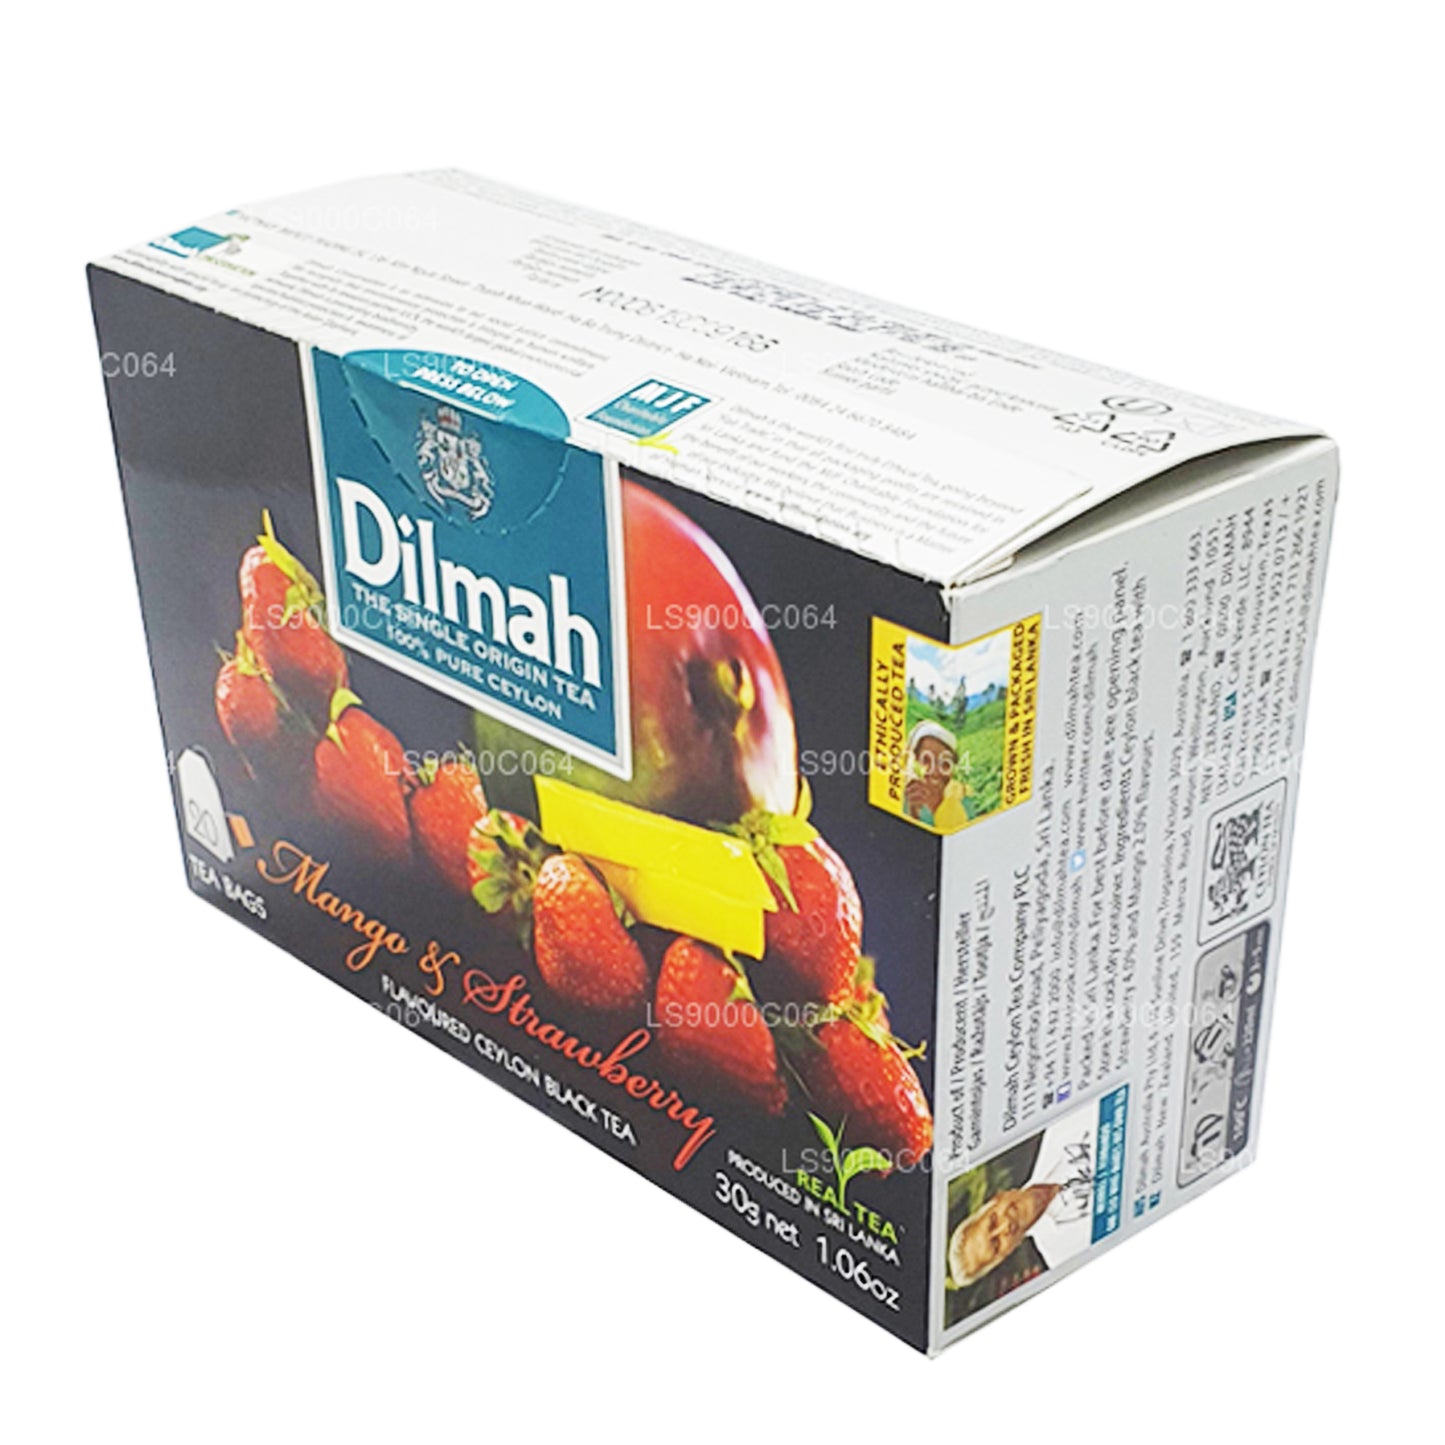 Tè aromatizzato al mango e fragola Dilmah (30 g) 20 bustine di tè